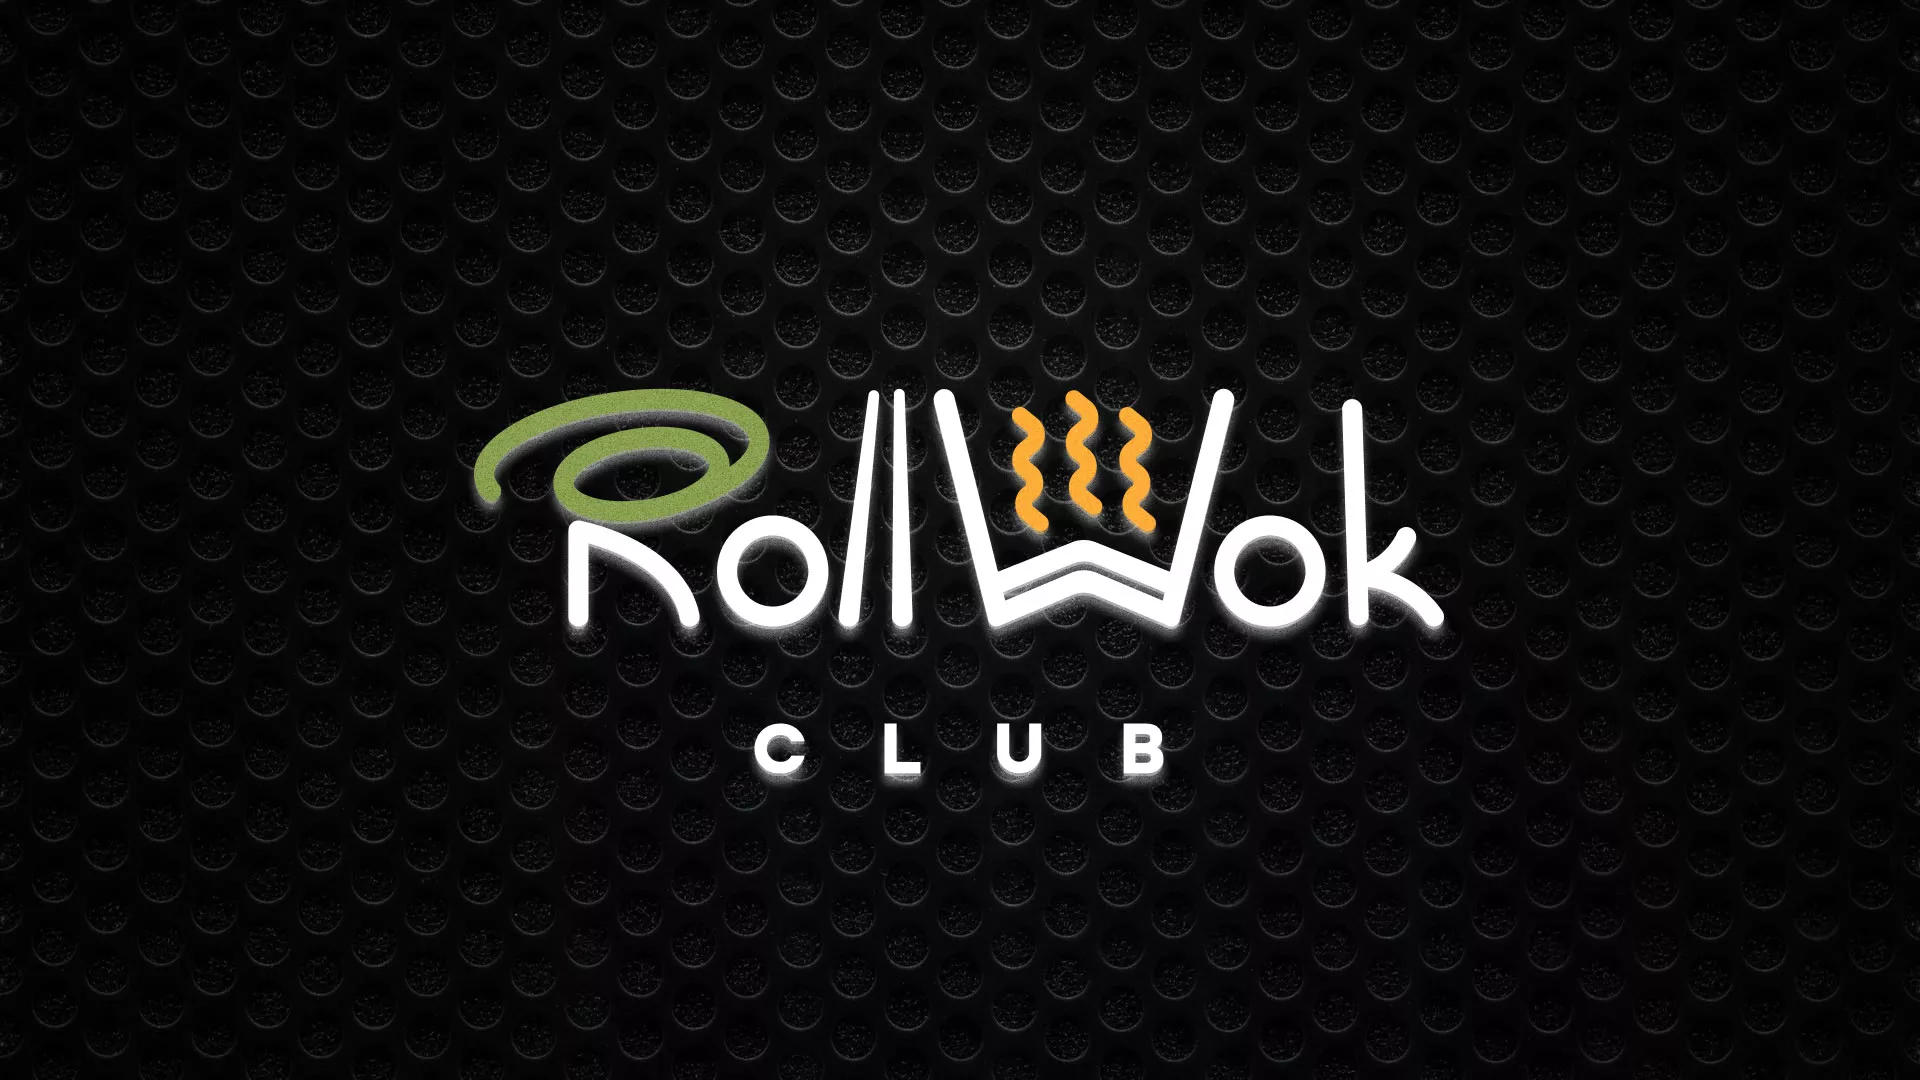 Брендирование торговых точек суши-бара «Roll Wok Club» в Усть-Лабинске